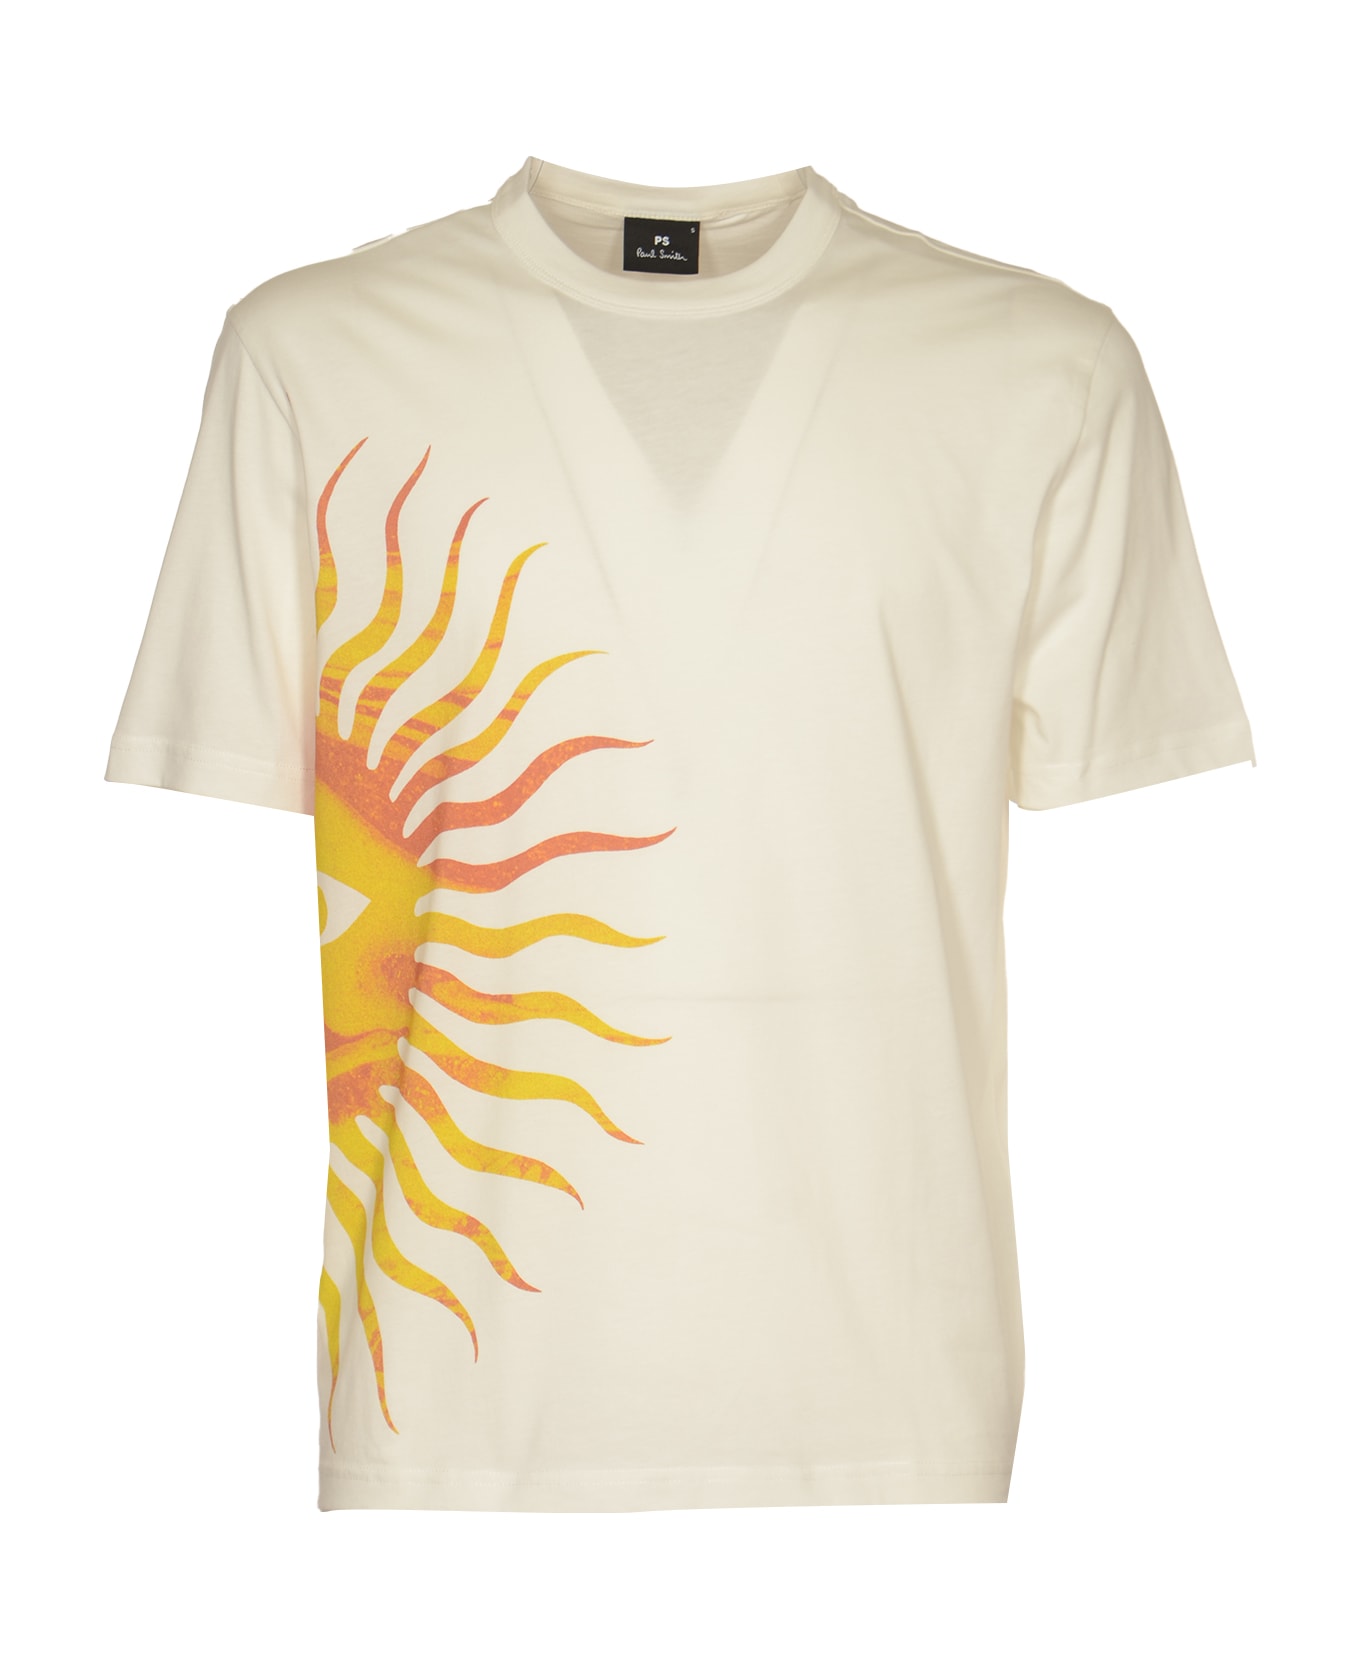 Paul Smith Sunnyside T-shirt - Beige シャツ